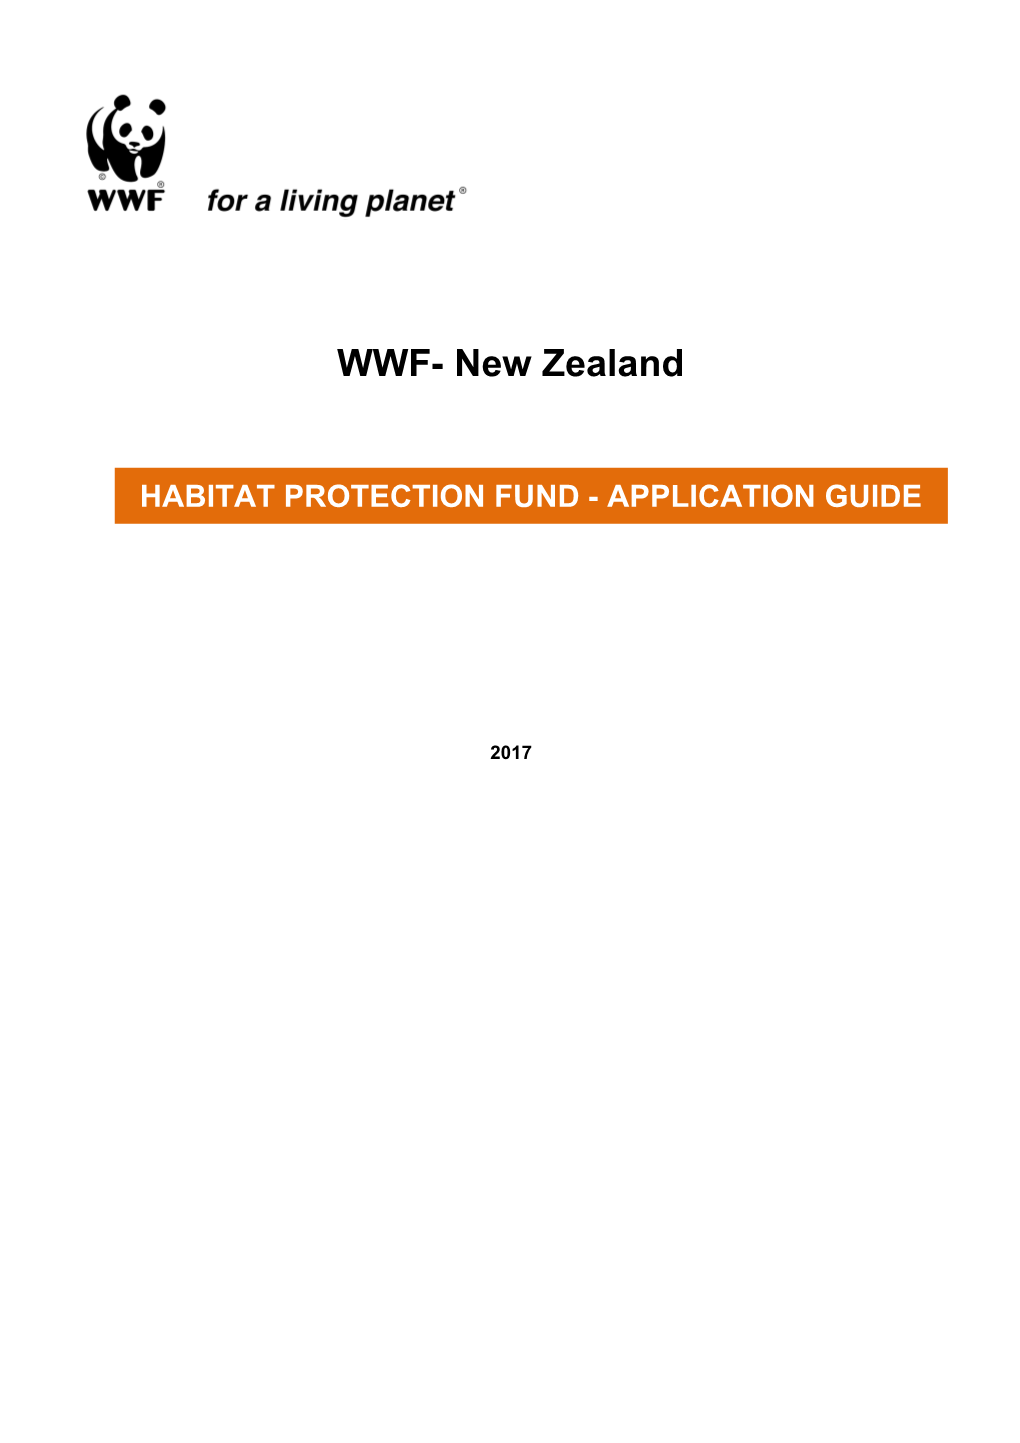 Habitat Protection Fund (HPF)Background